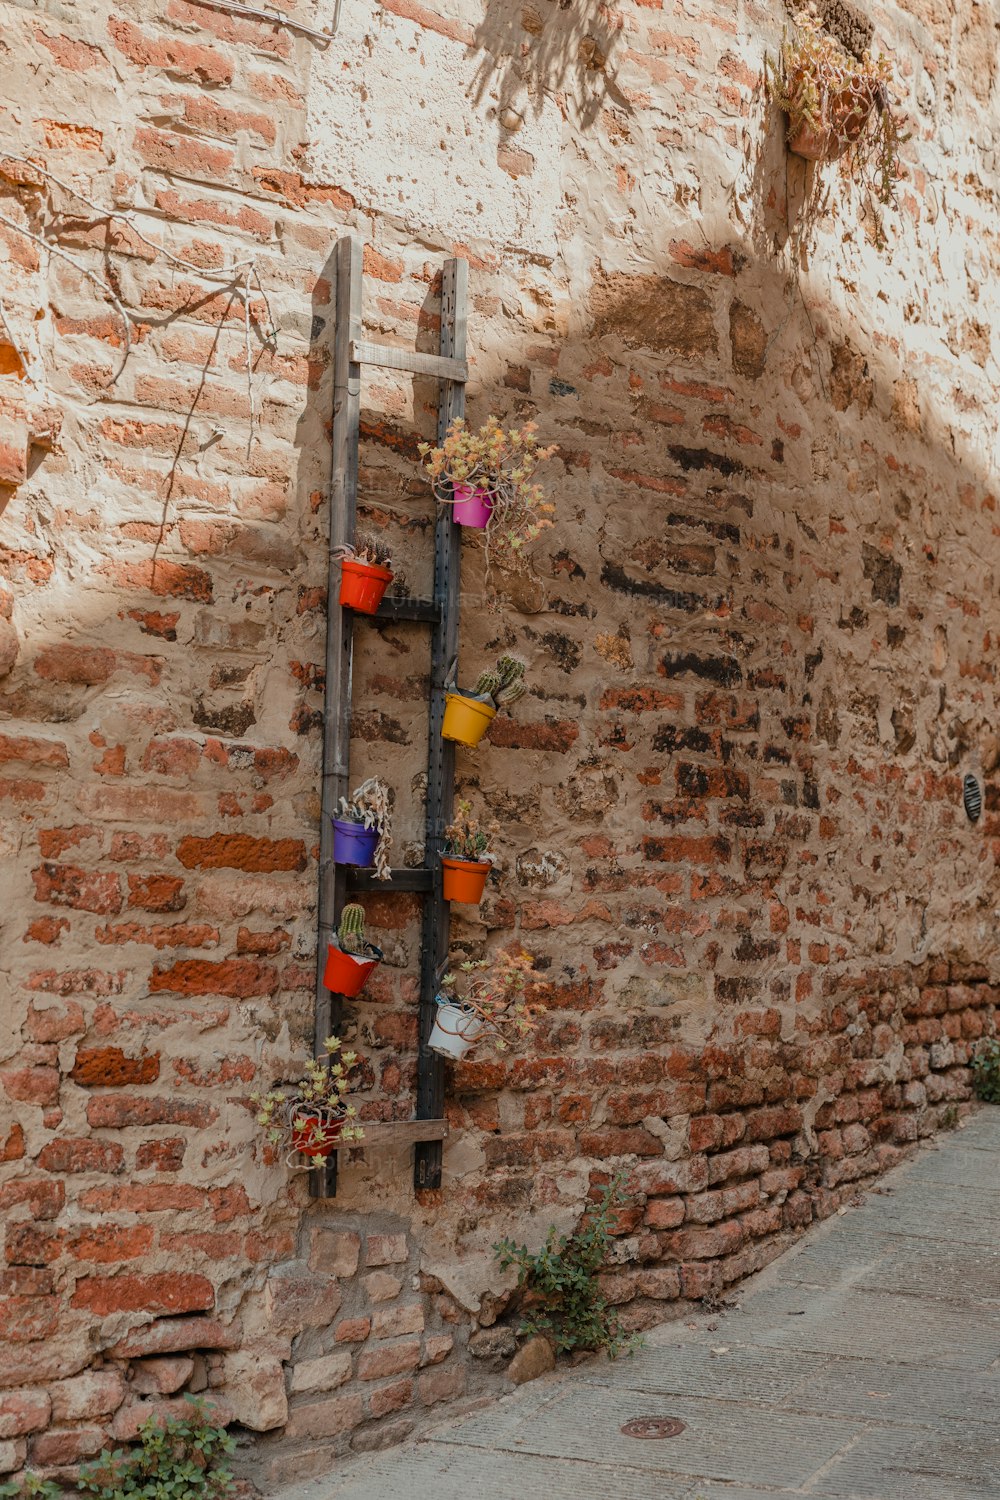 una pared de ladrillo con una escalera que contiene plantas en macetas